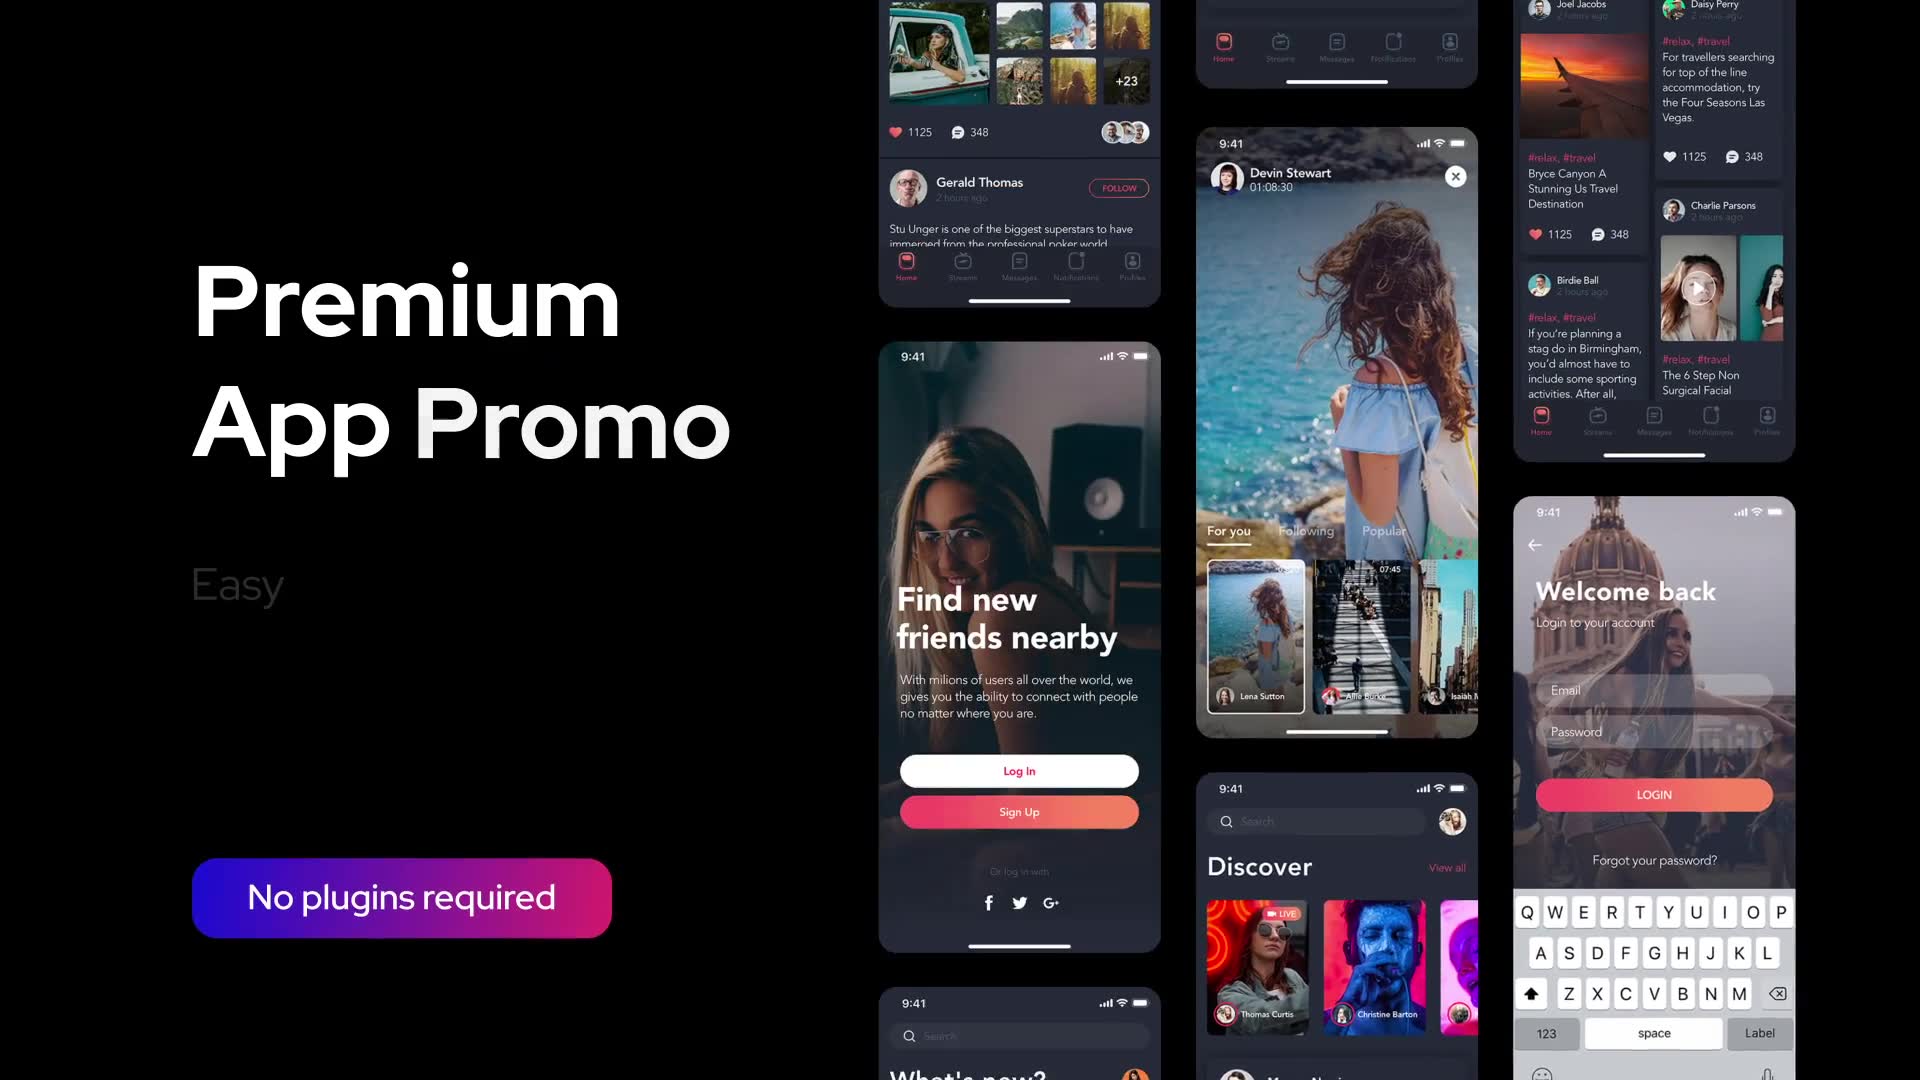 Premium Clean App Promo for Premiere Pro Videohive 33585434 Premiere Pro Image 2